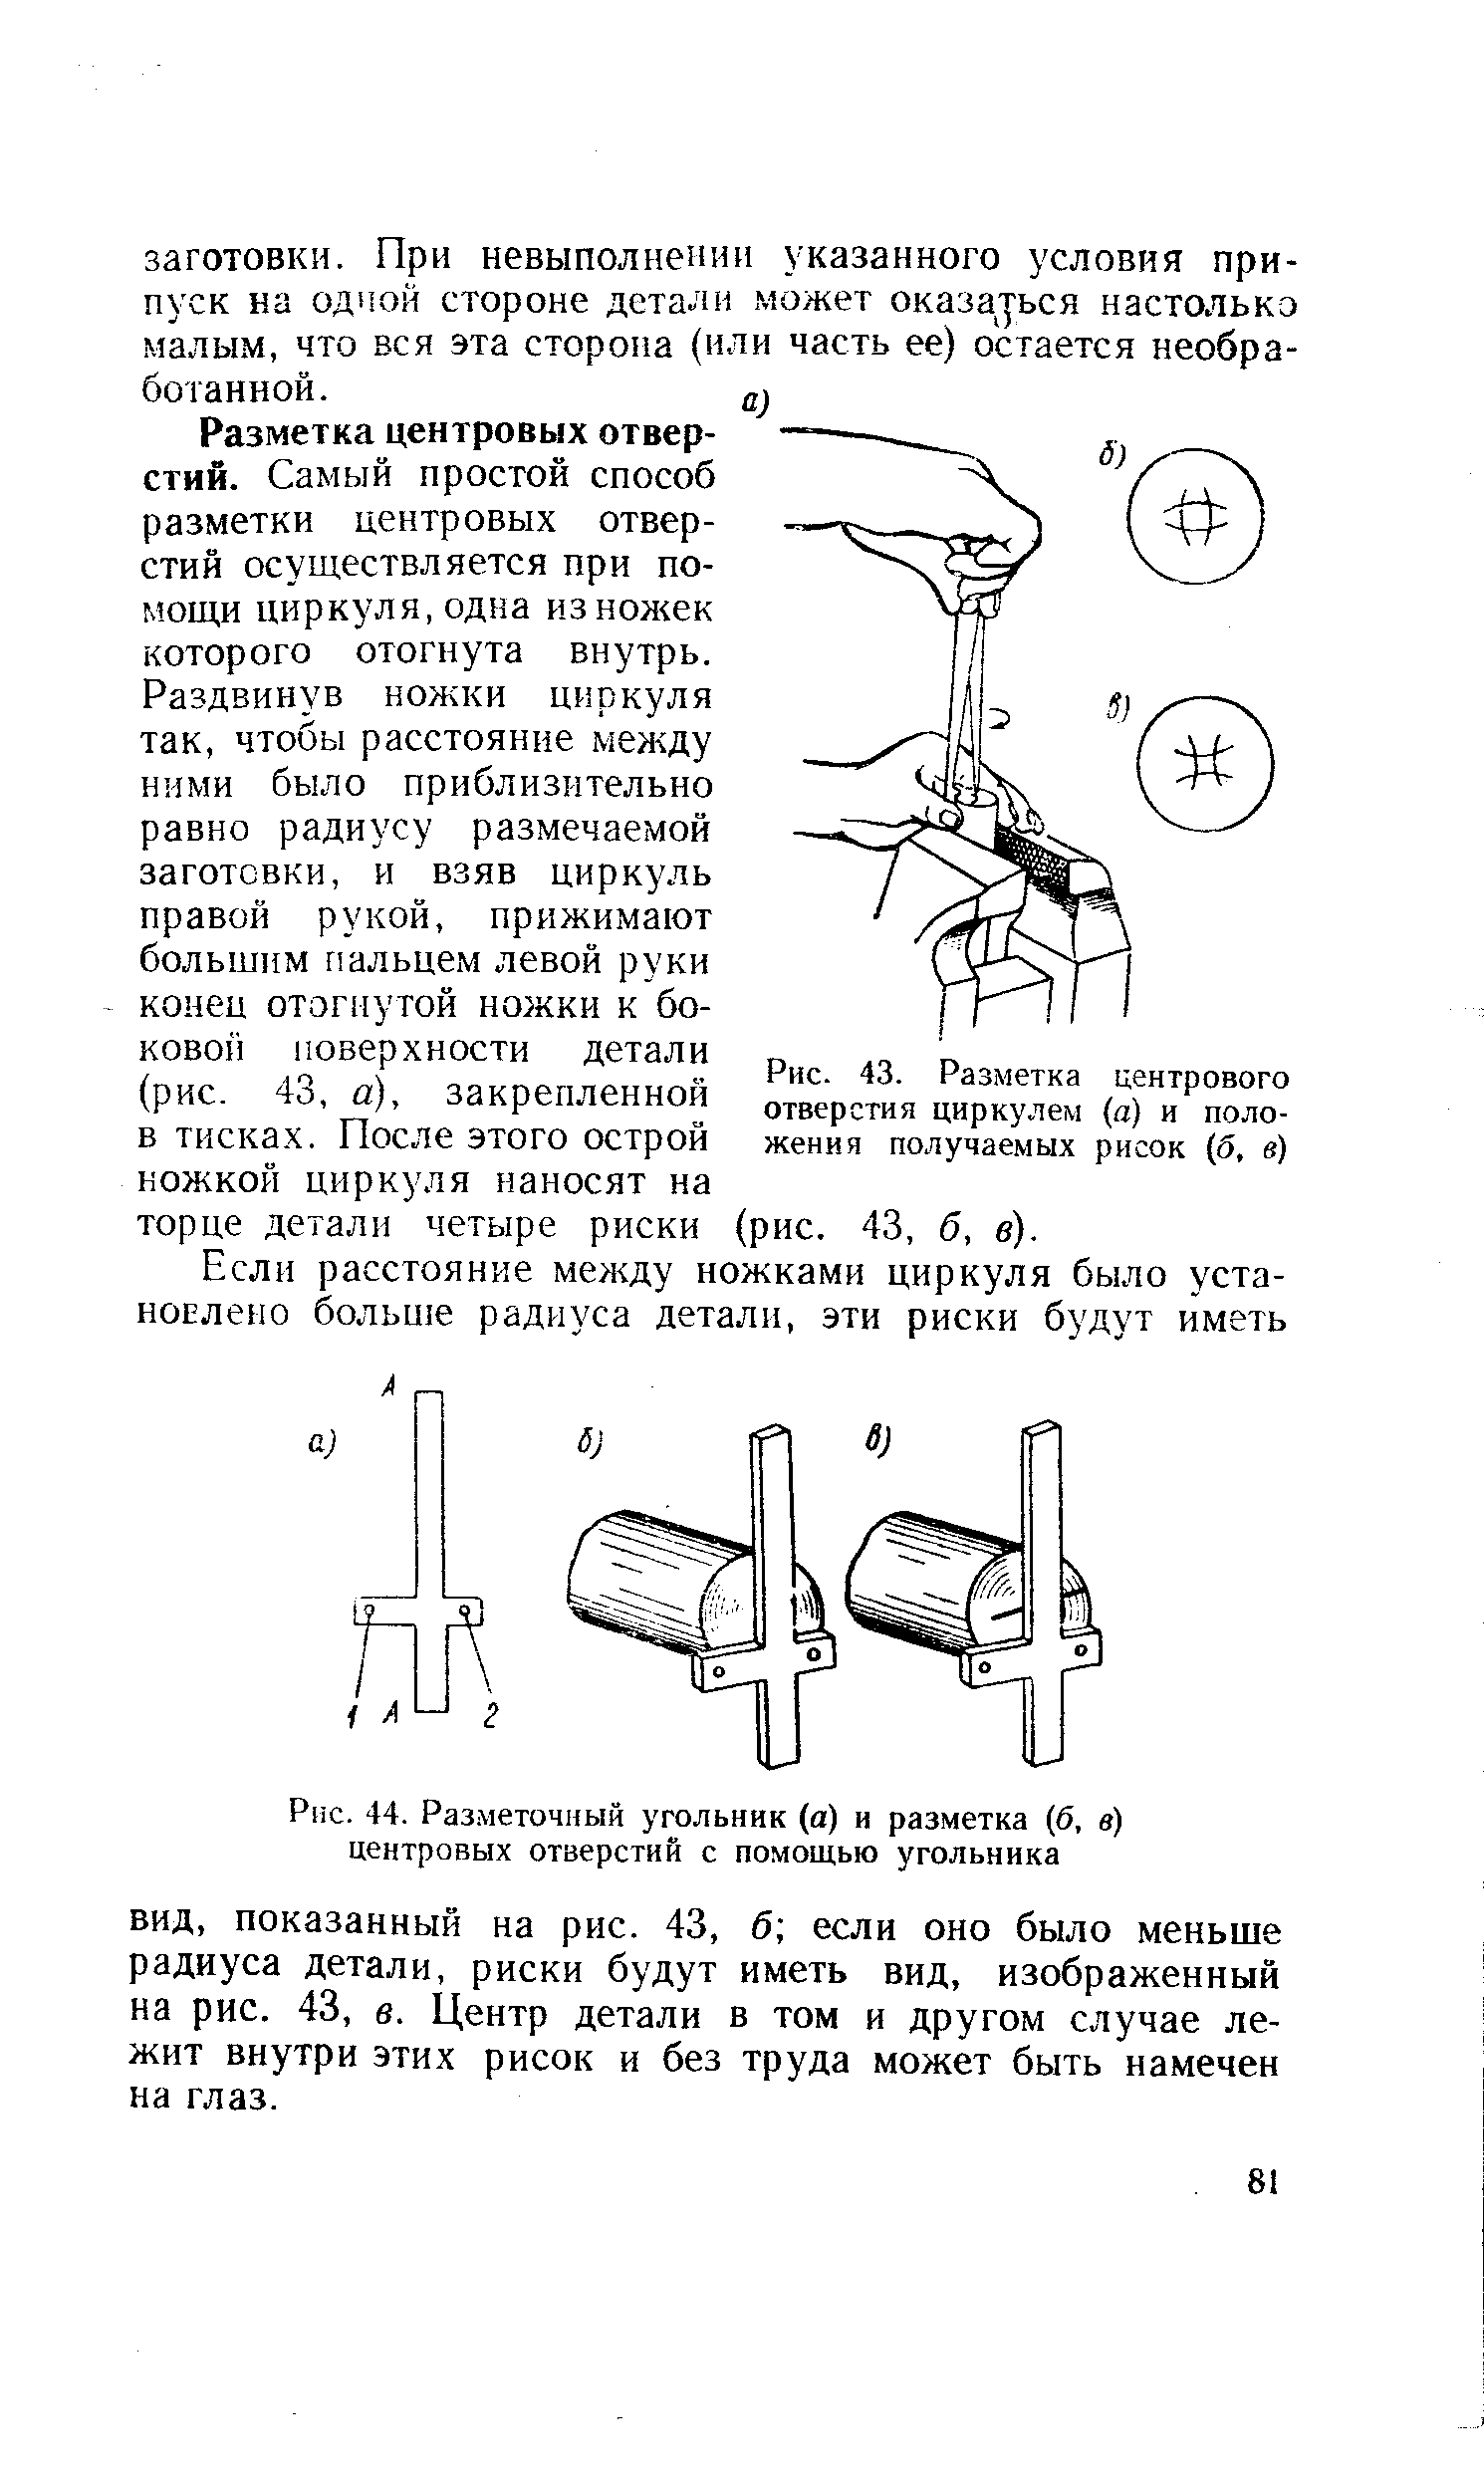 Рис. 43. Разметка центрового отверстия циркулем (а) и положения получаемых рисок (б, б )
